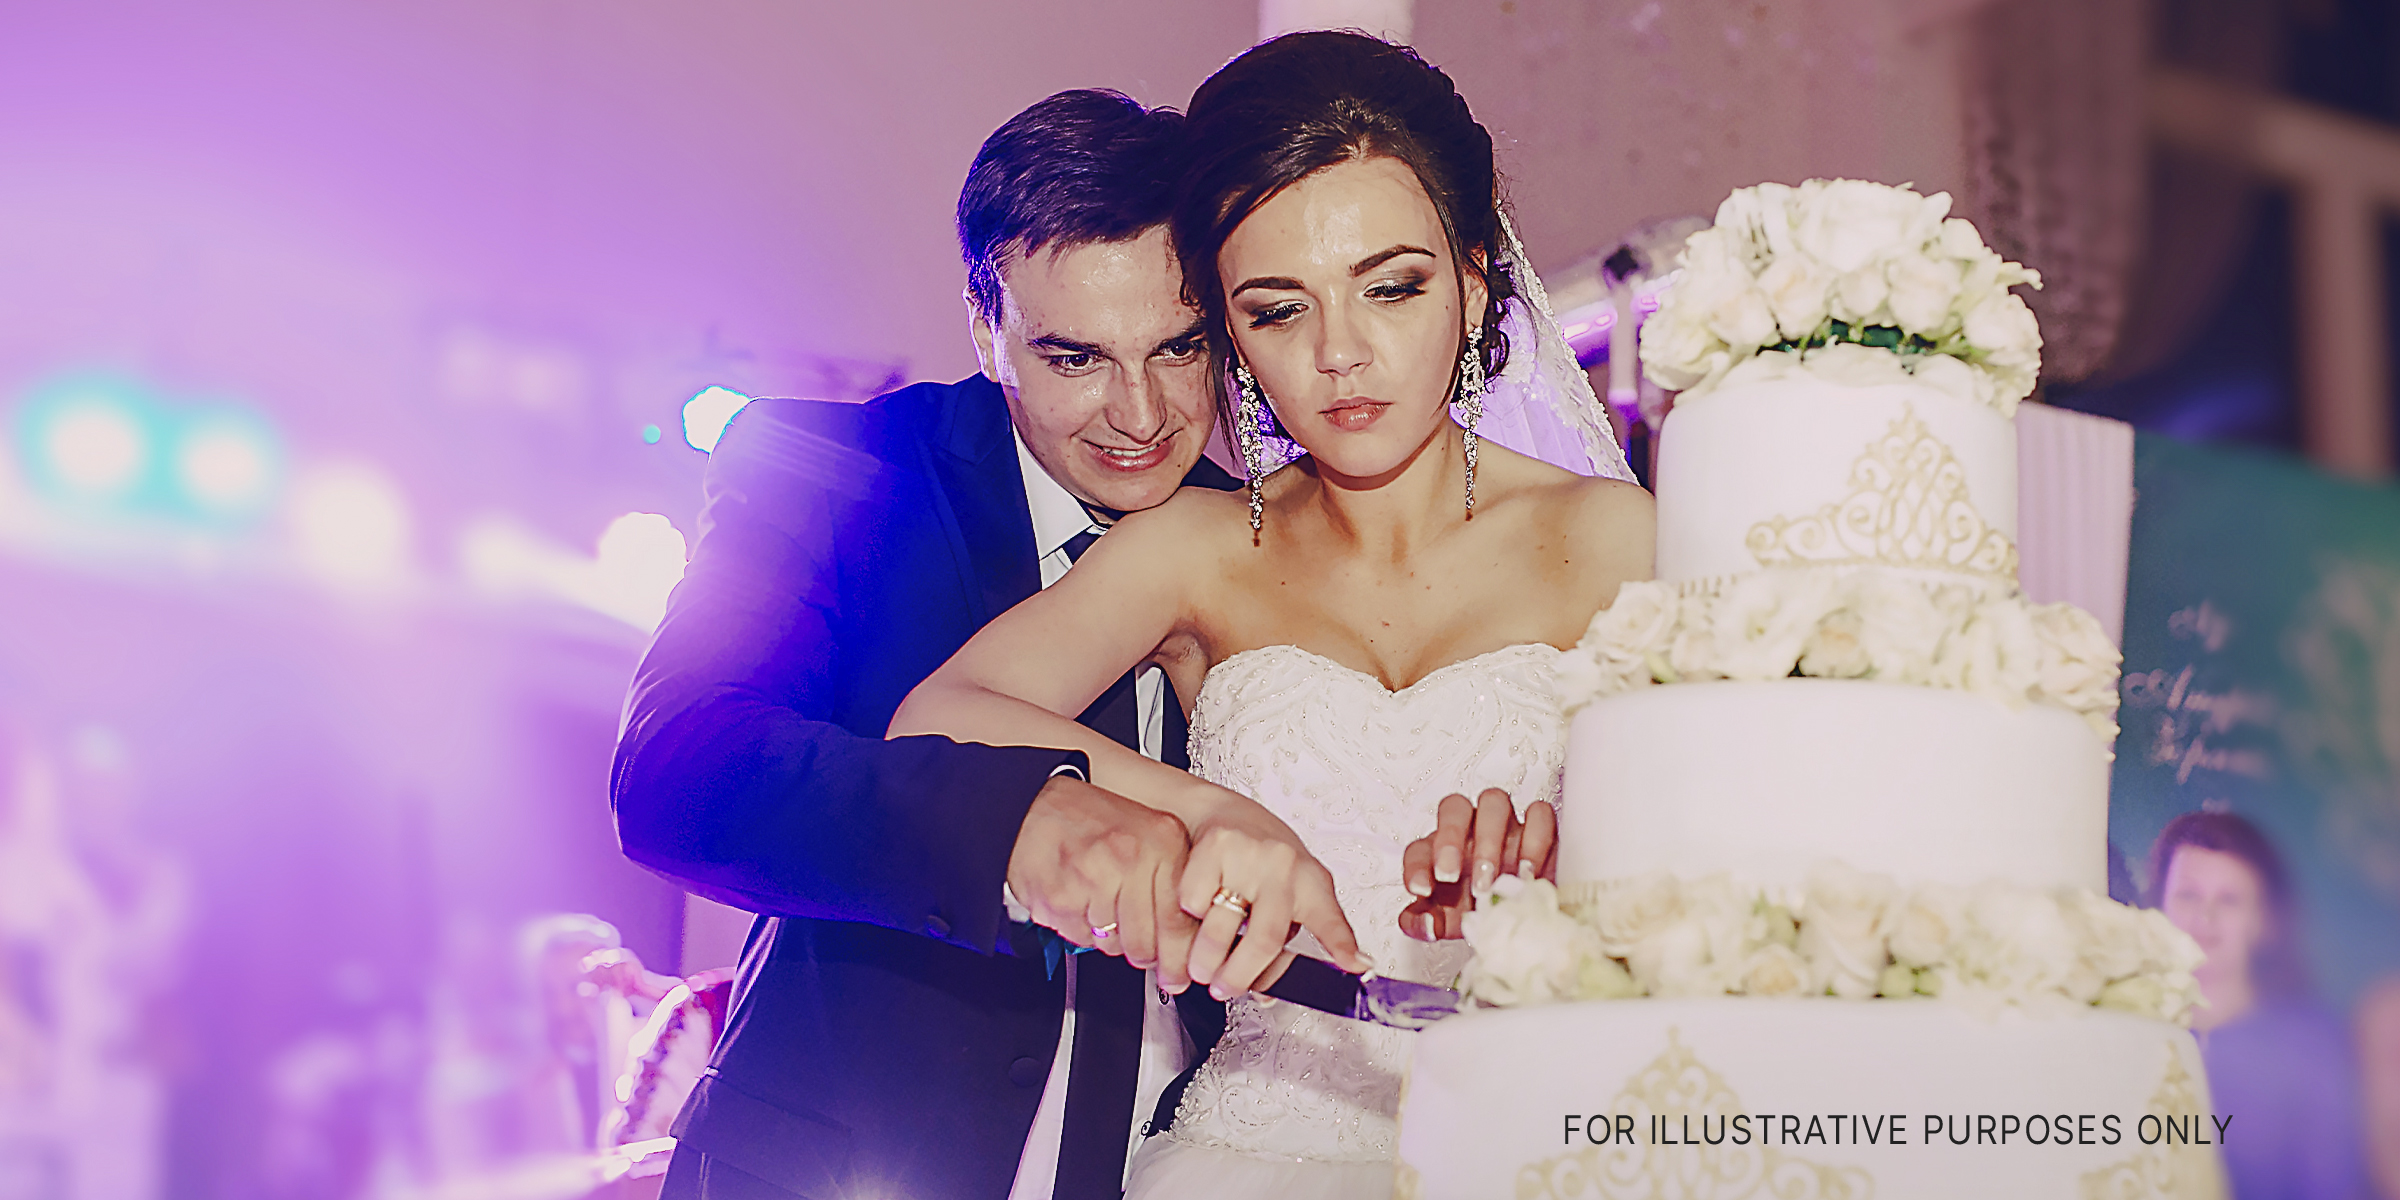 Braut und Bräutigam schneiden ihre Hochzeitstorte an | Quelle: freepik.com/prostooleh